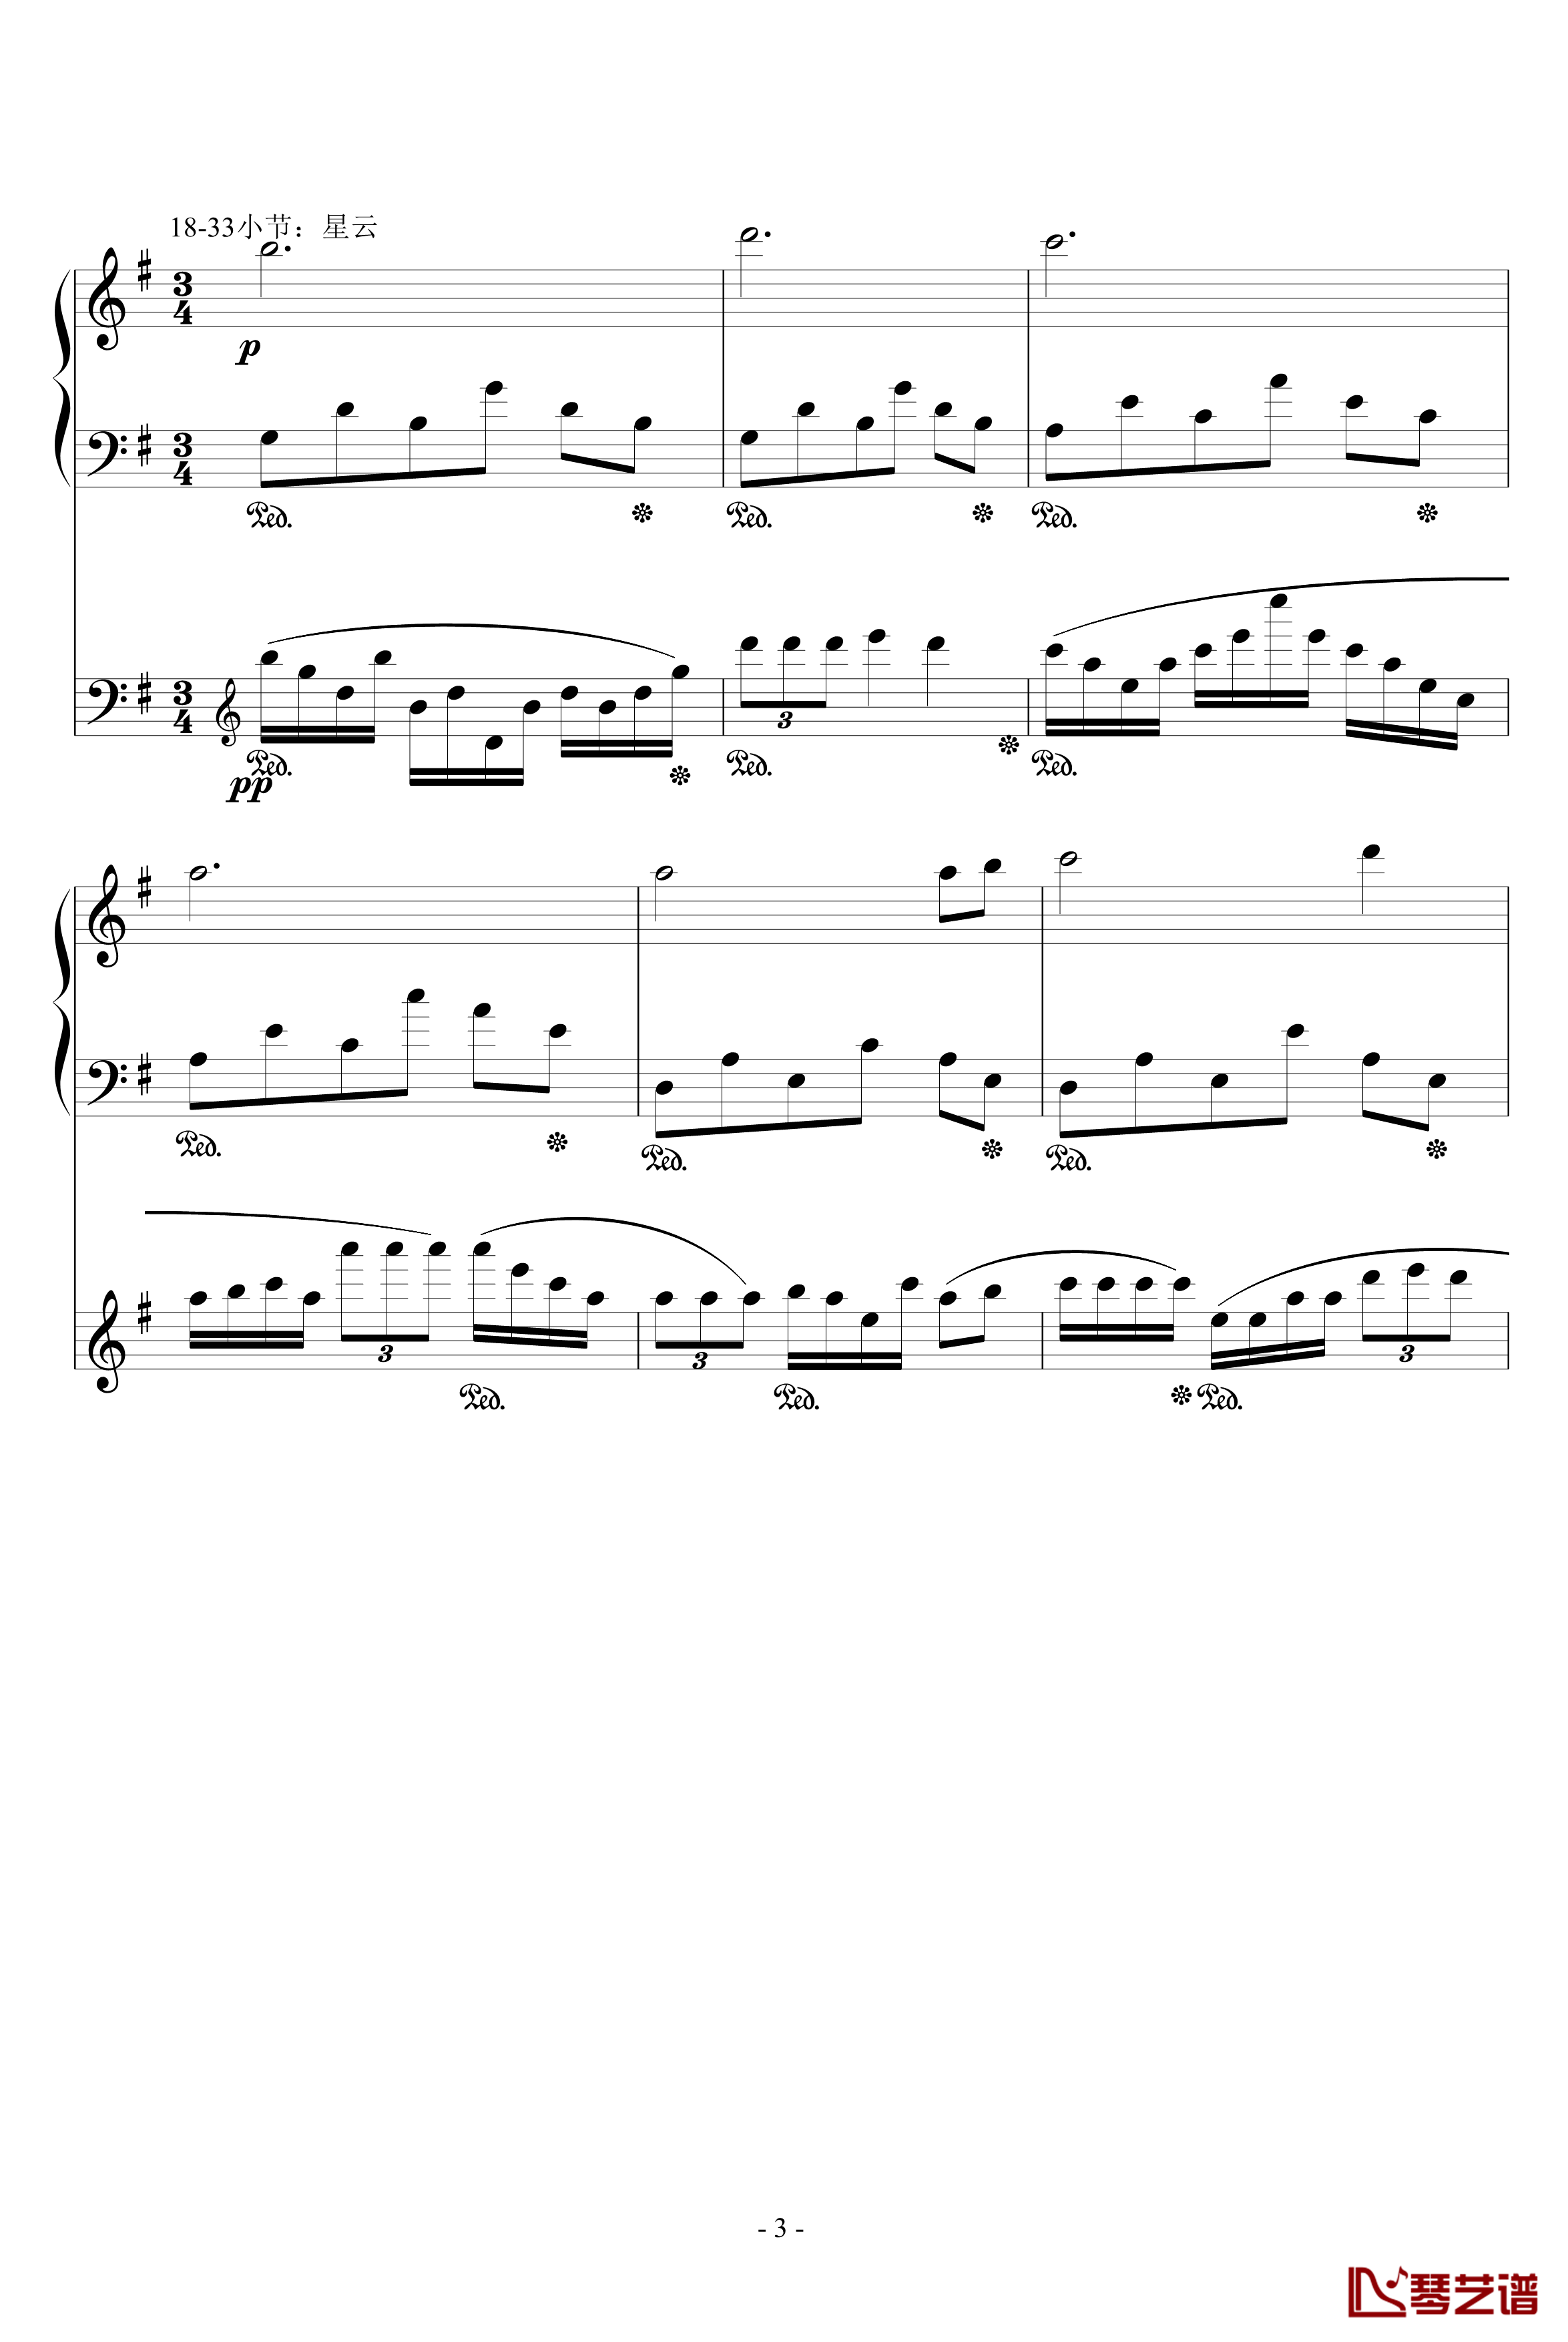 流星小幻想曲钢琴谱-修改-升c小调3